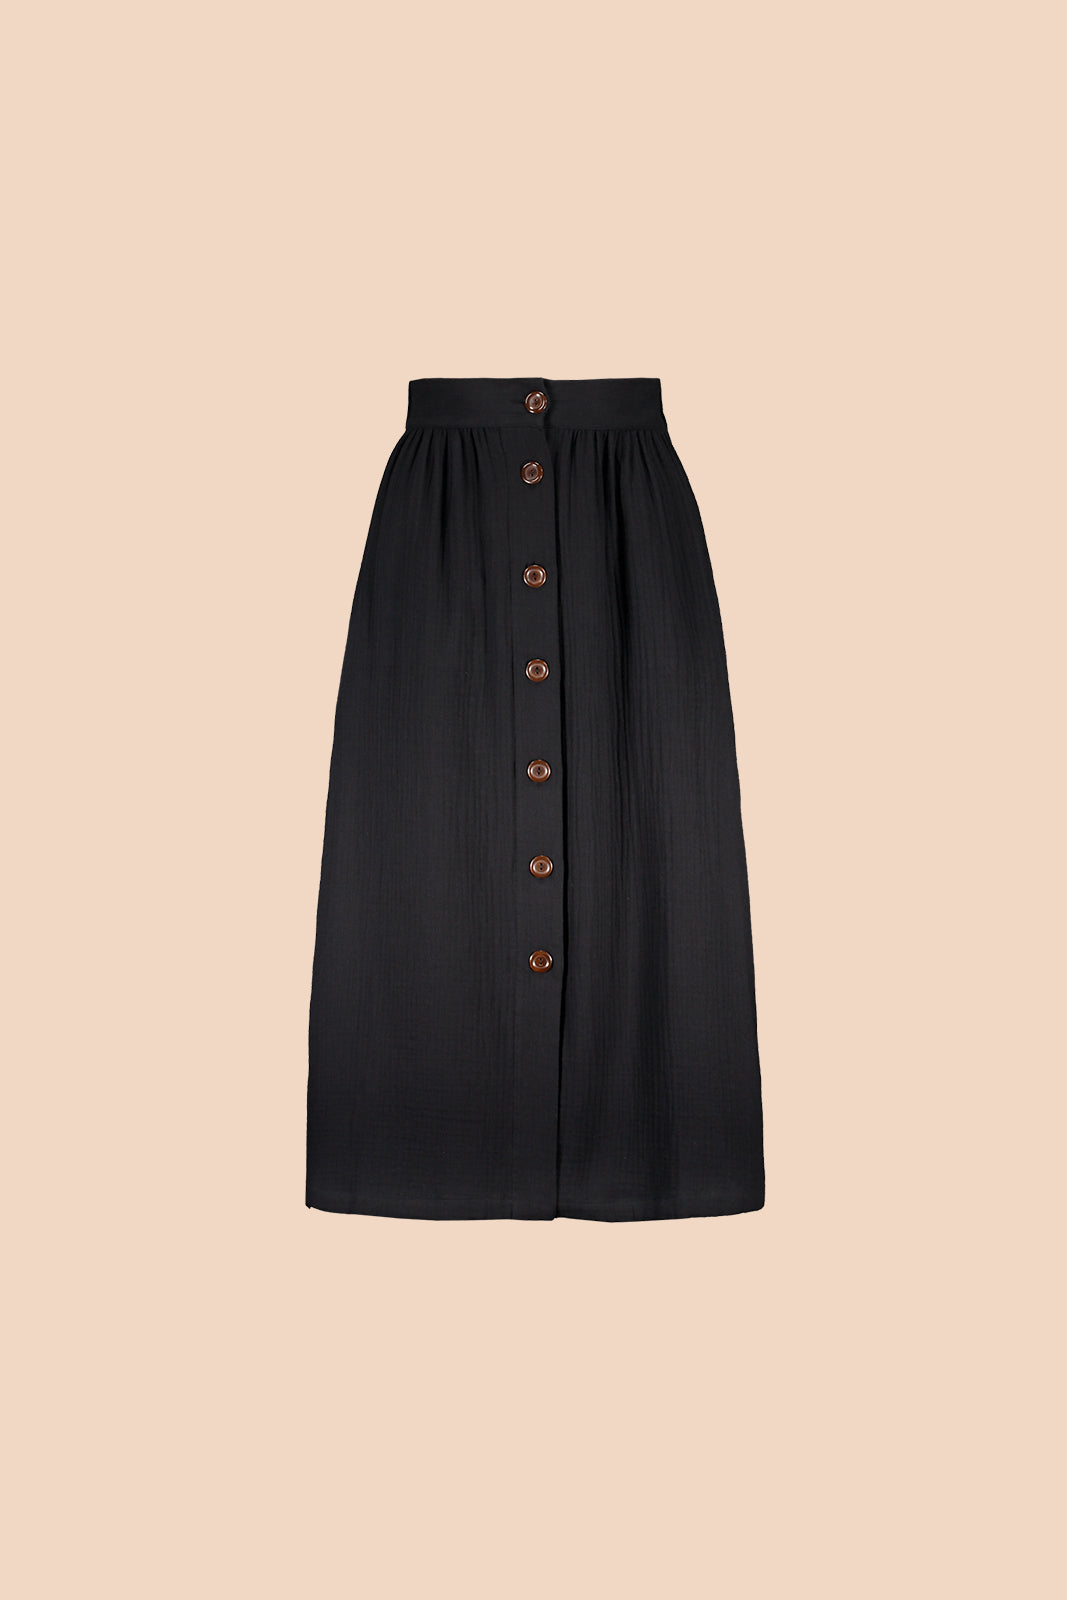 Button Skirt Black